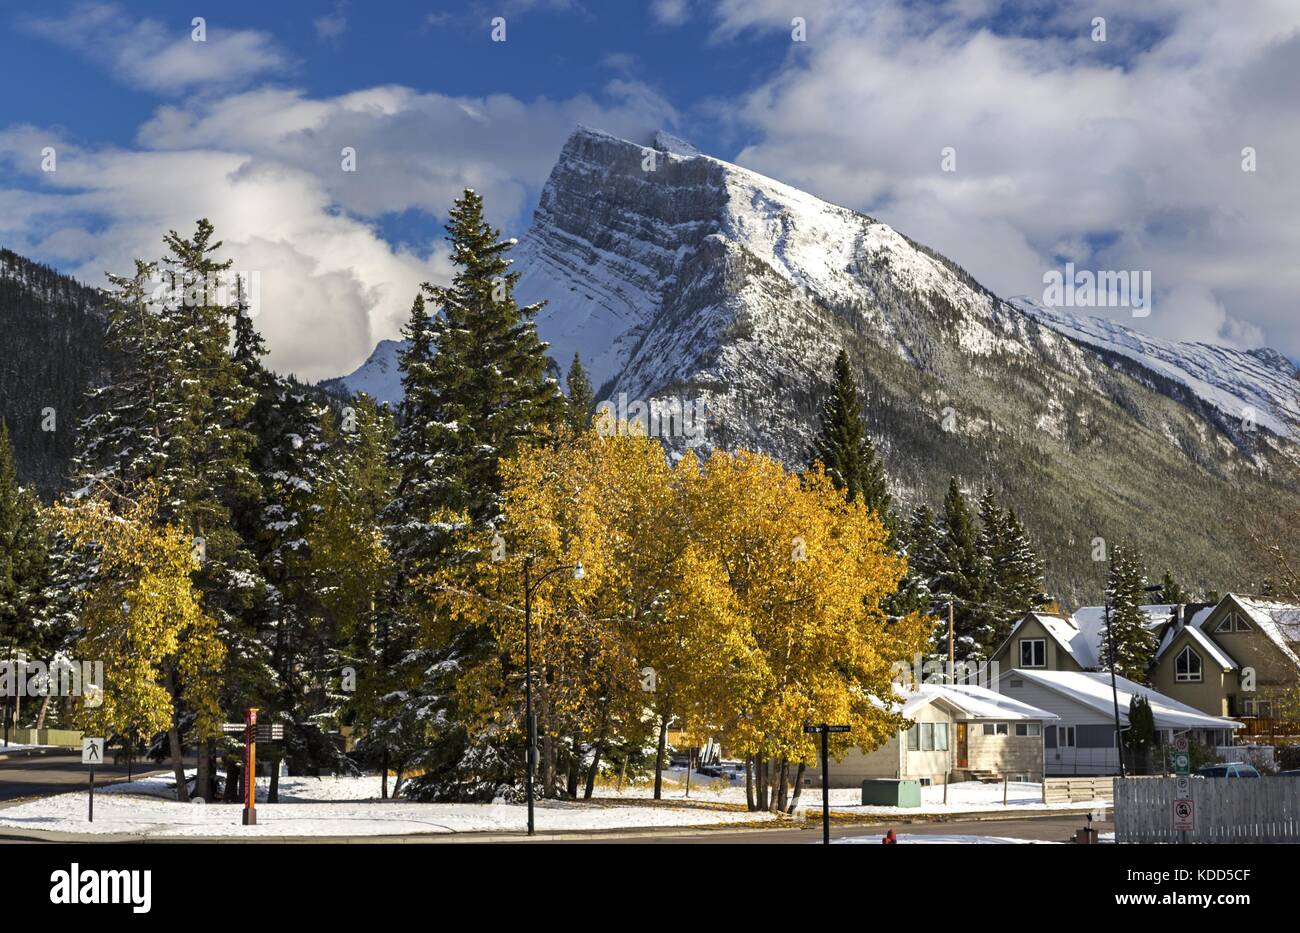 Wohn- Stadtgebiet nach dem frühen Herbst Schnee in der Stadt Banff Alberta Kanada mit weit entfernten schneebedeckten Berge Rundle oben im Hintergrund Stockfoto